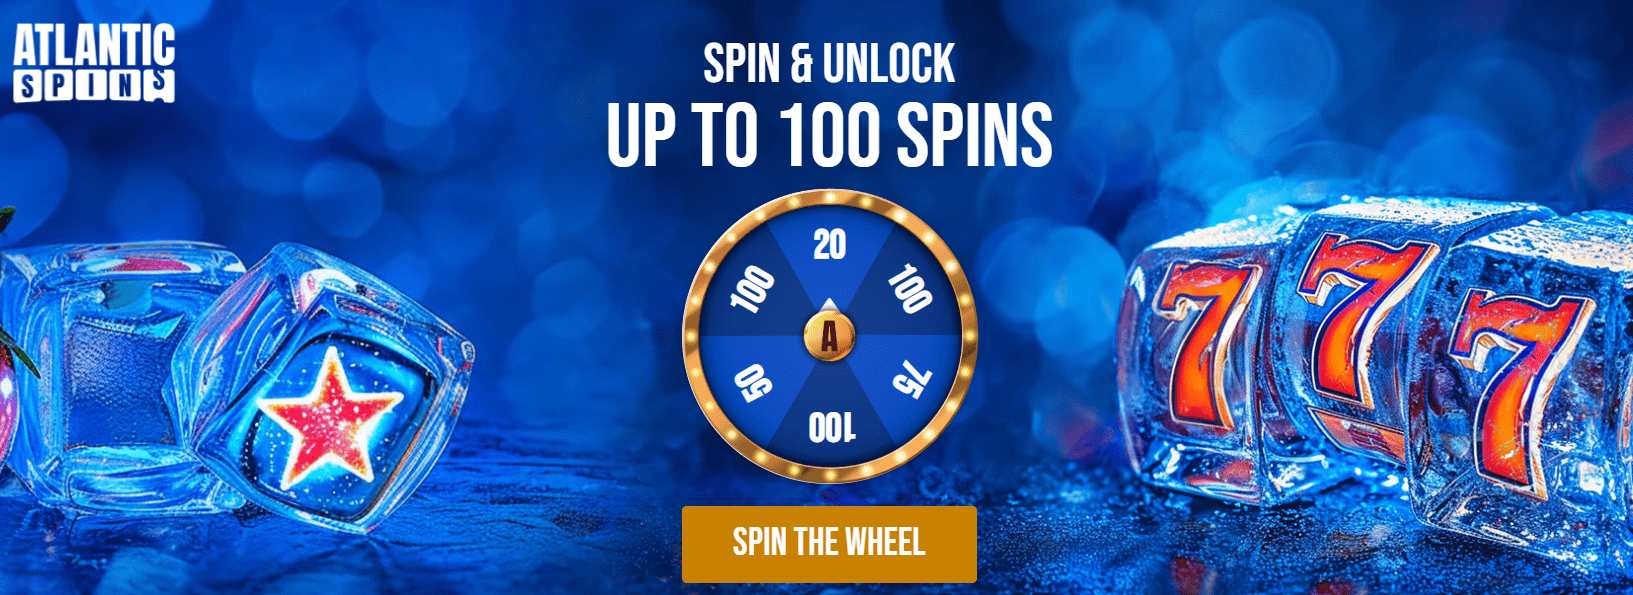 atlantic spins 100 free spins